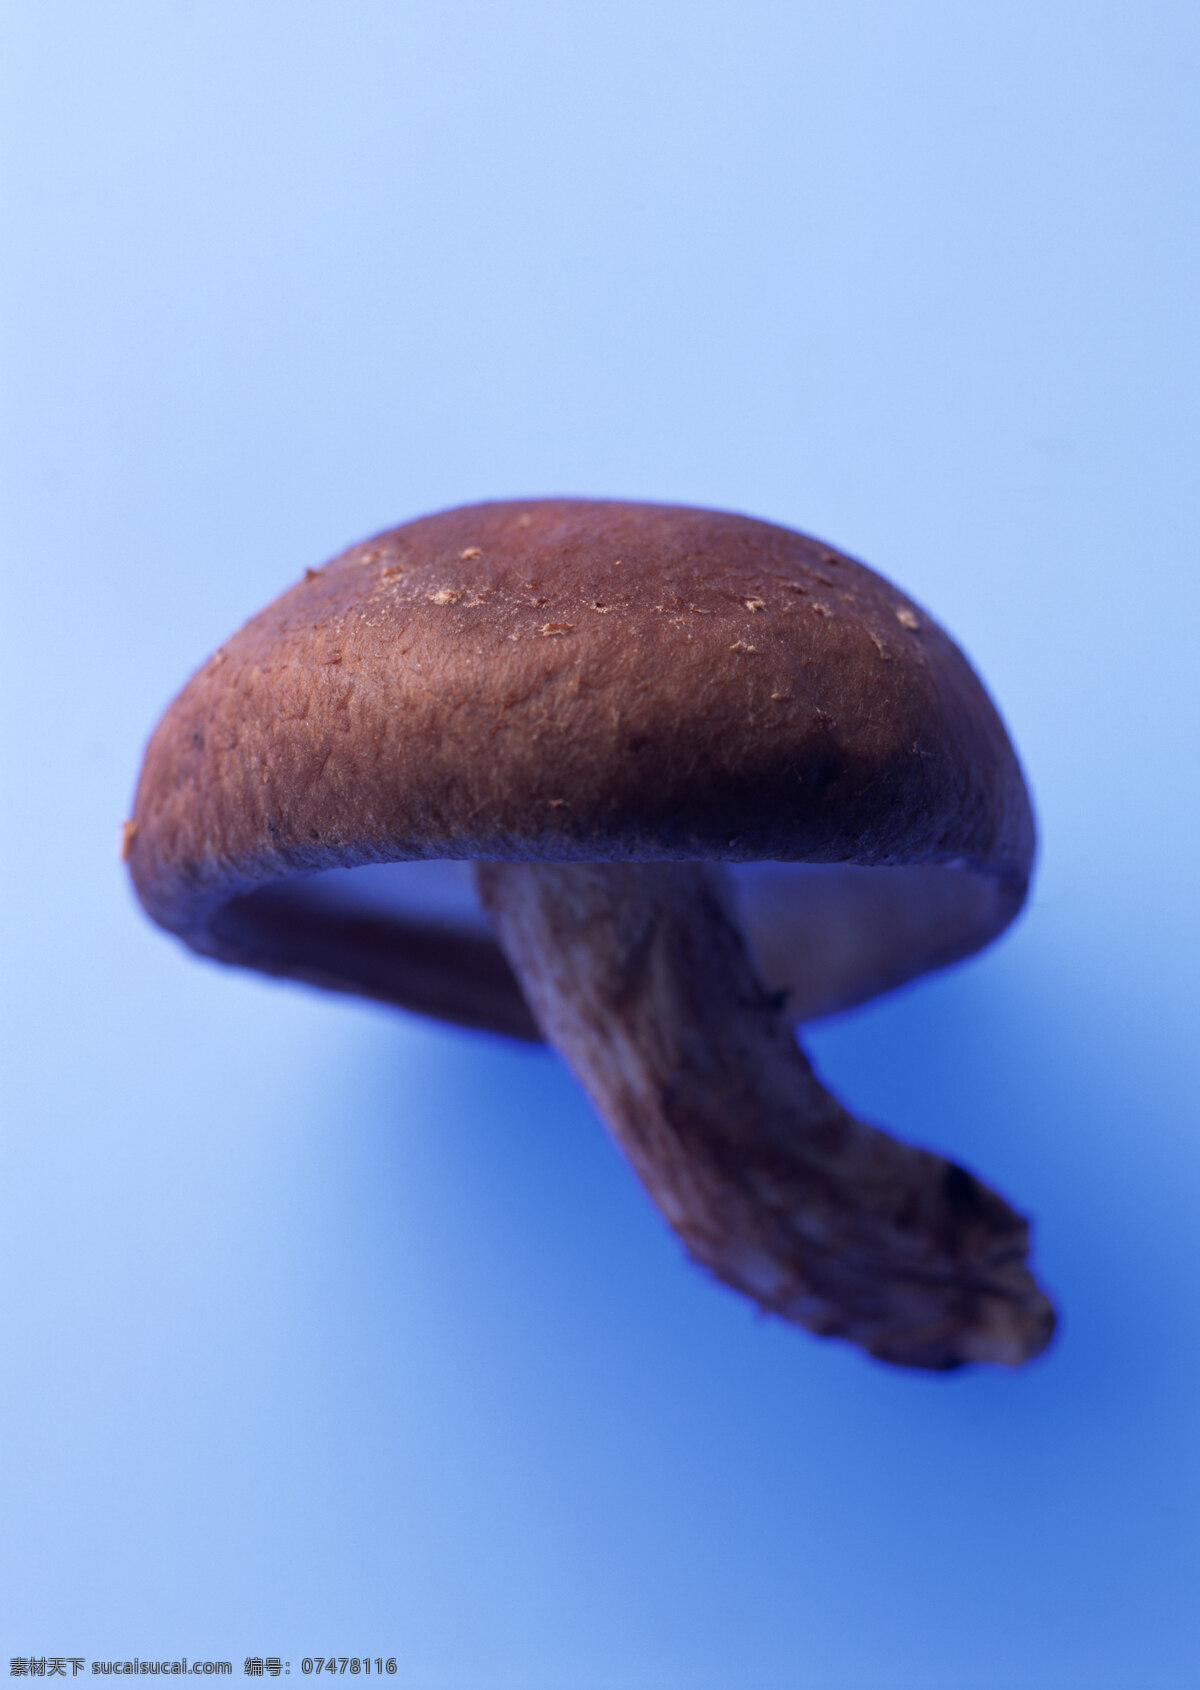 新鲜 蘑菇 新鲜蔬菜 菌 摄影图 高清图片 蘑菇图片 餐饮美食